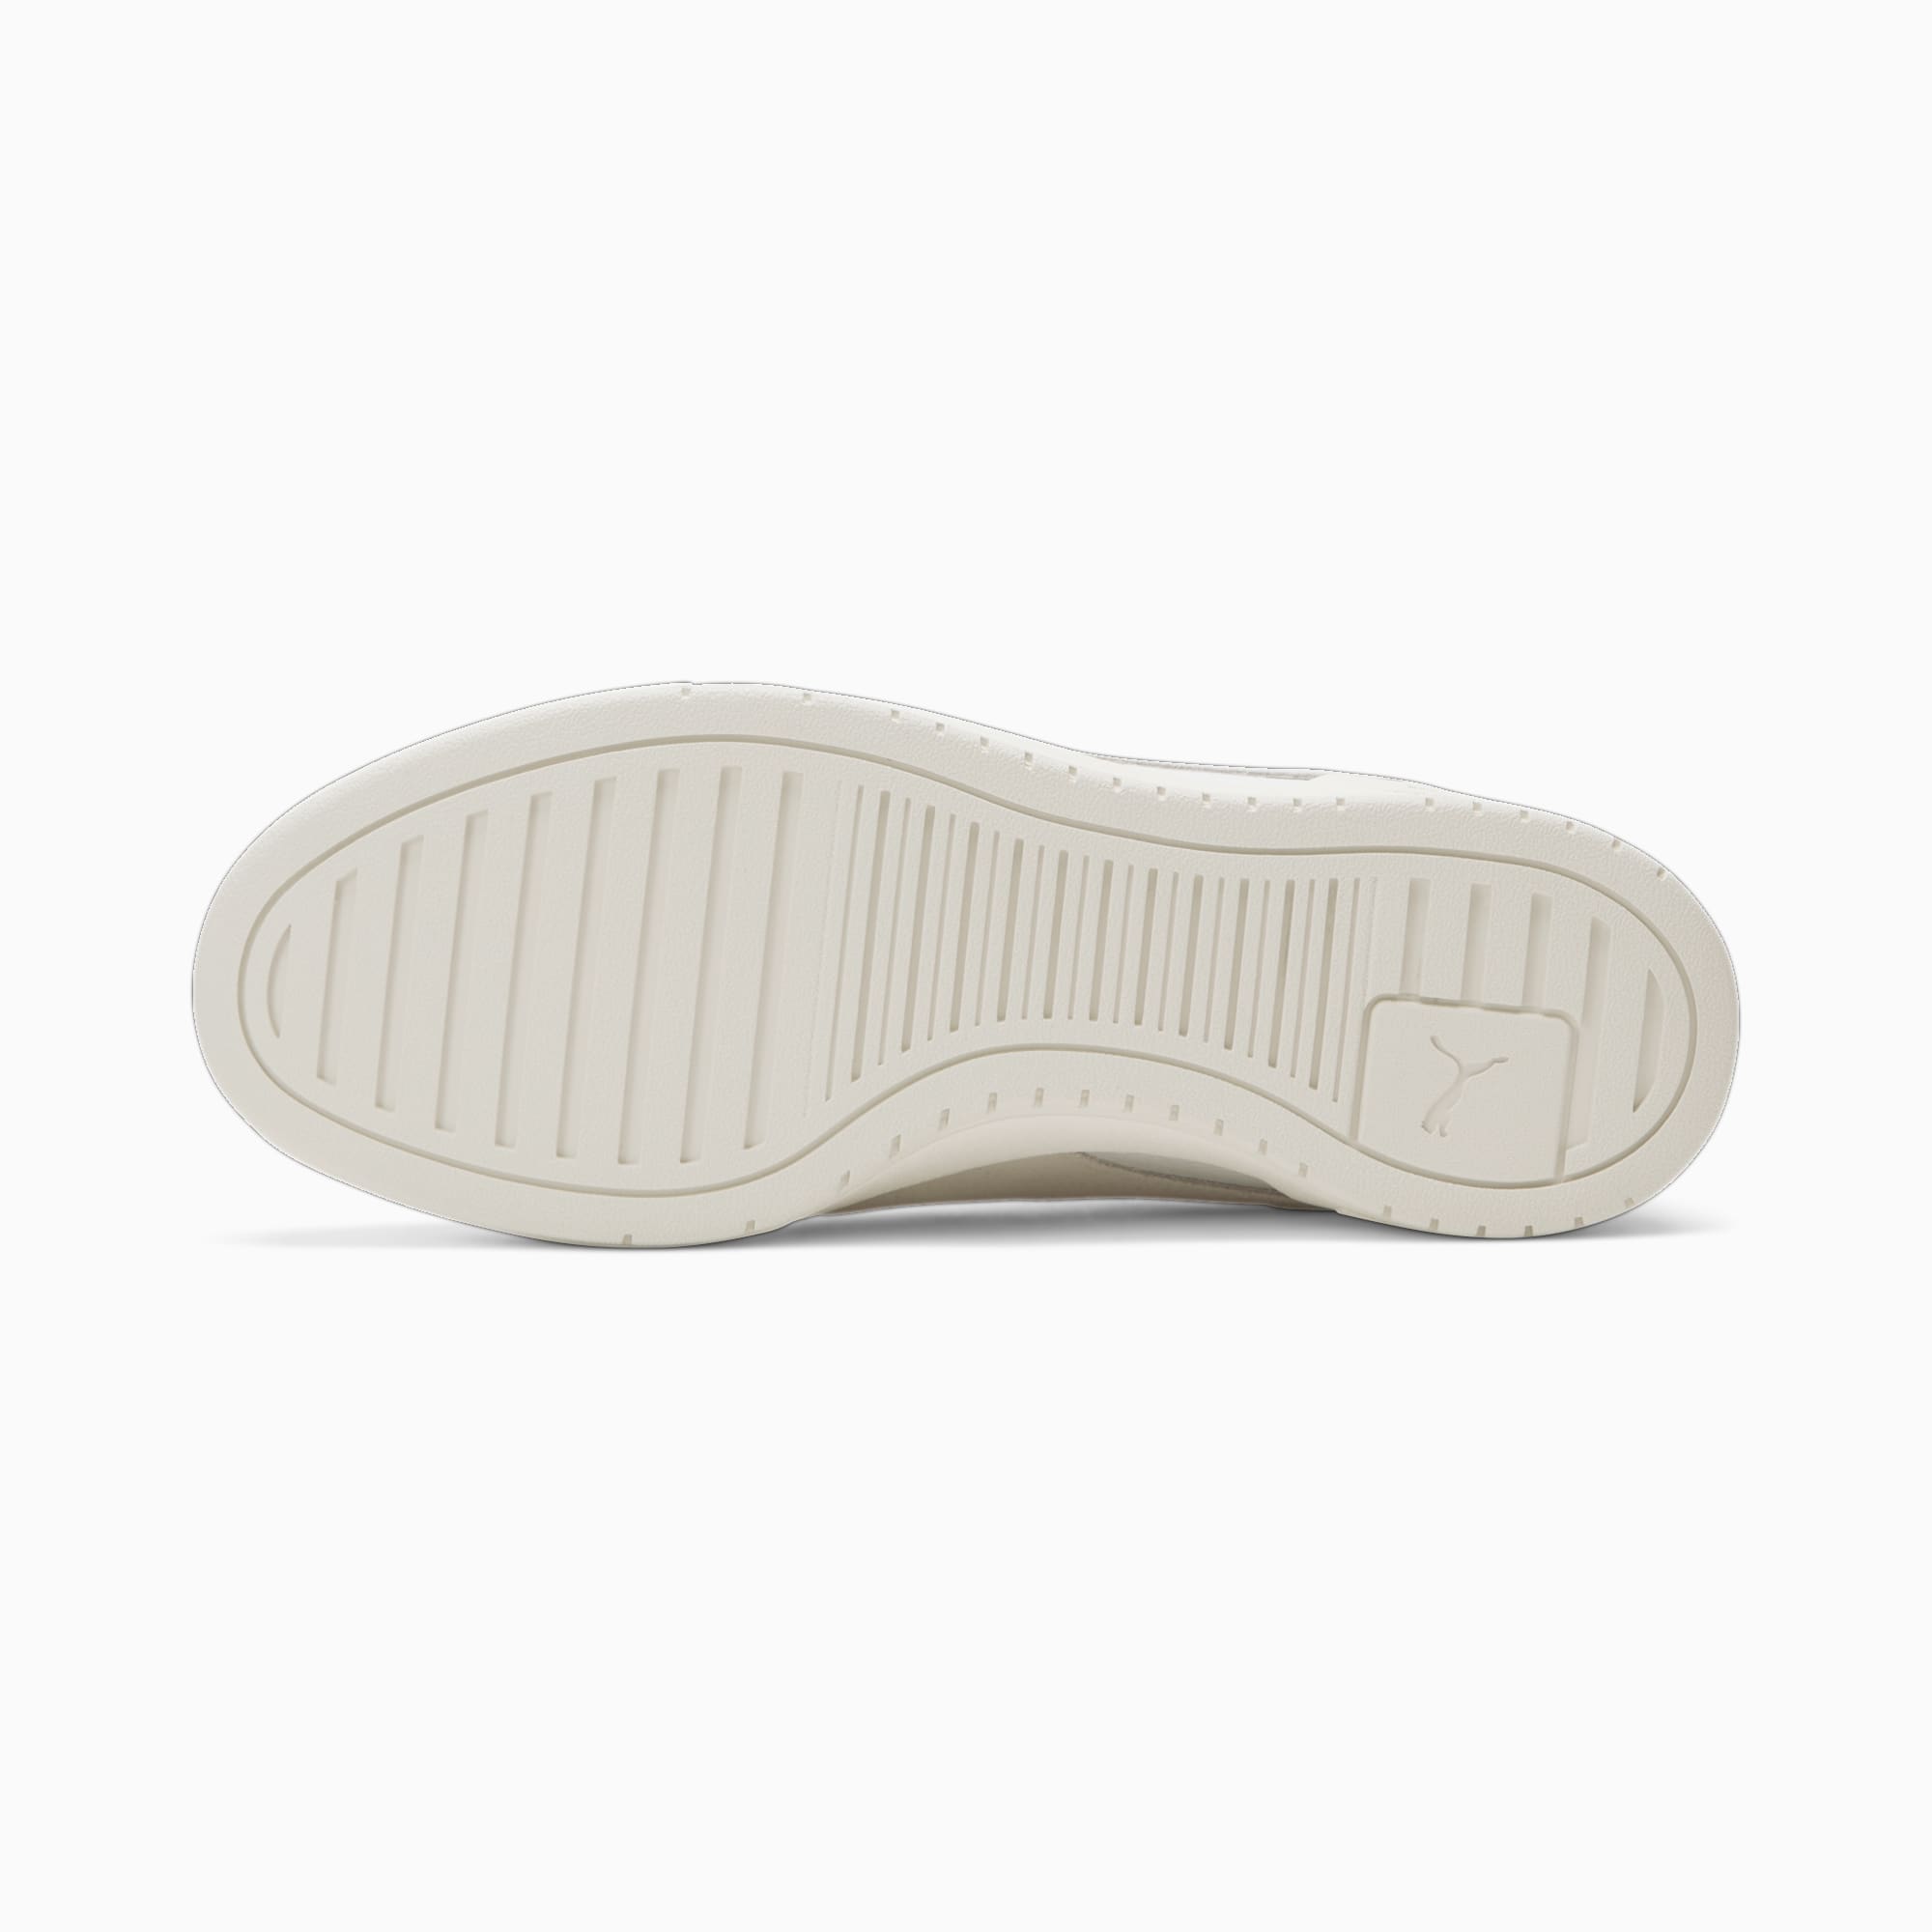 PUMA CA Pro OW Sneakers Schuhe, Weiß/Grau, Größe: 35.5, Schuhe